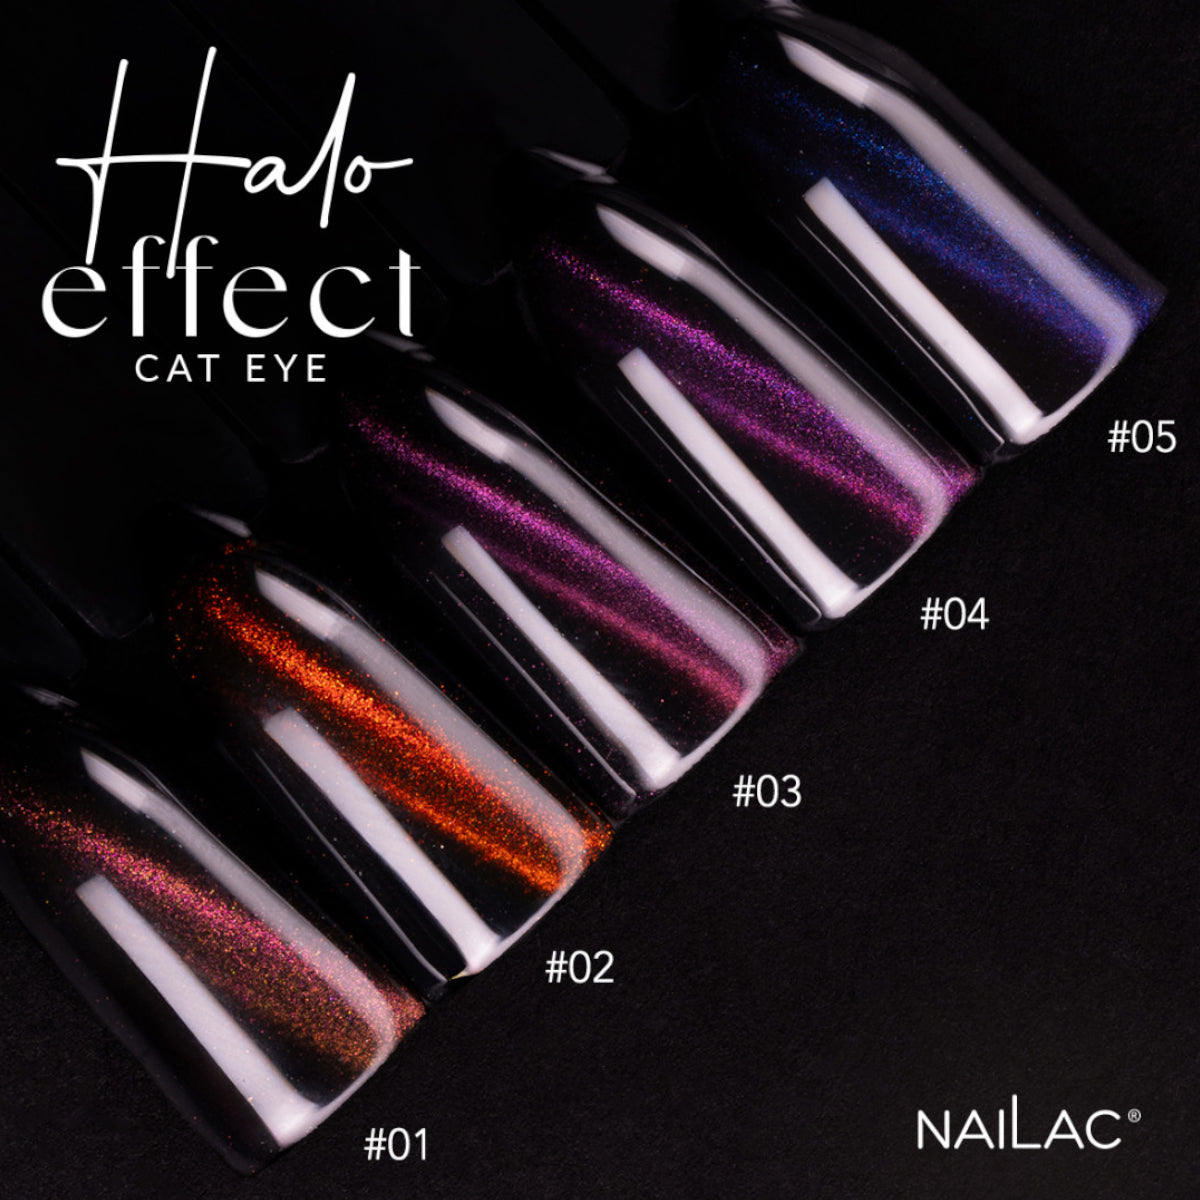 NaiLac UV/LED Gel Nail Polish Halo Effect Cat Eye 05